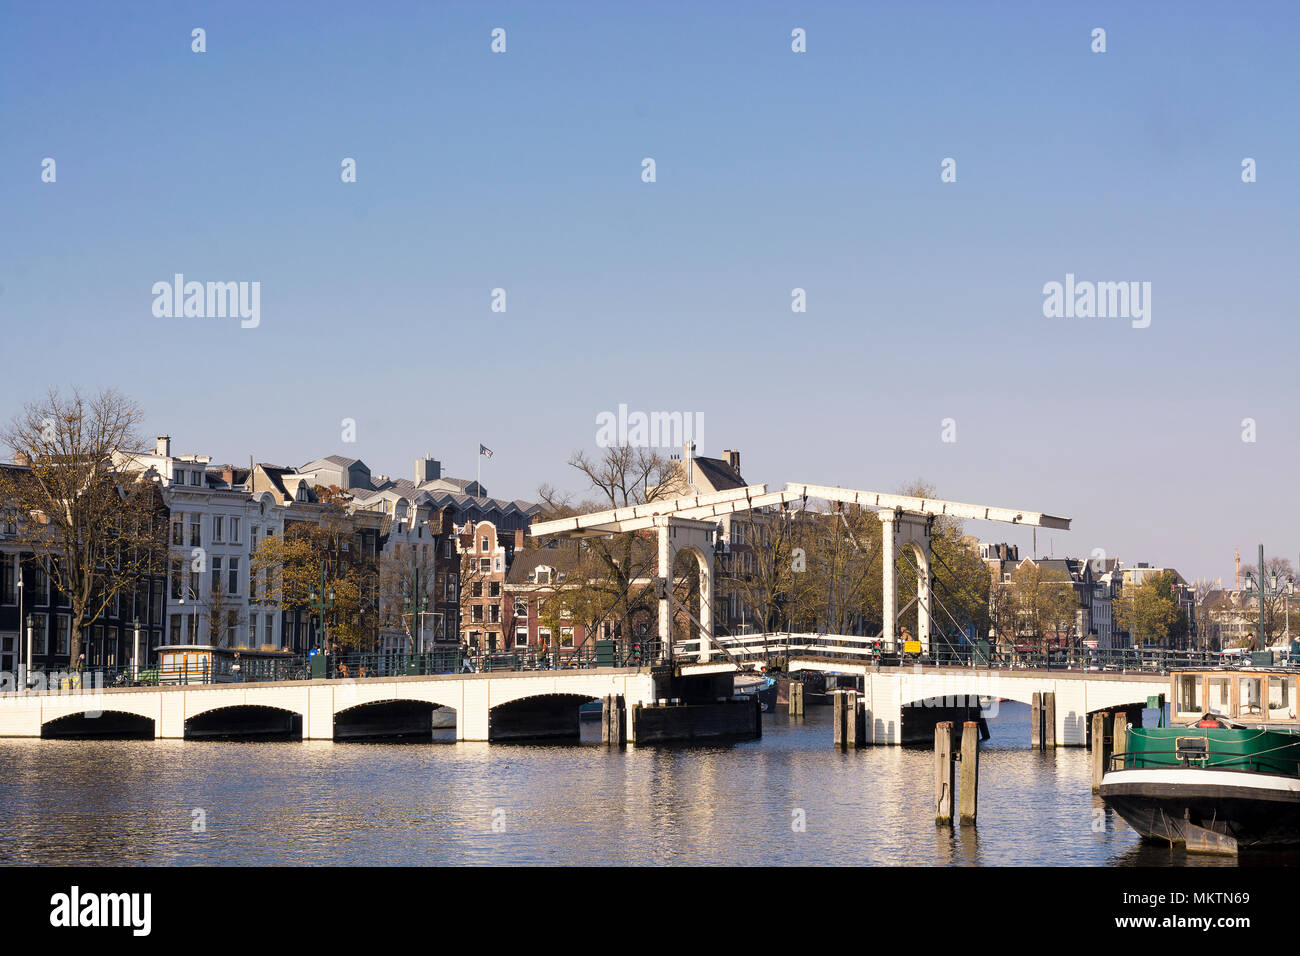 Vue sur le Skinny Bridge sur la rivière Amstel, à Amsterdam, capitale des Pays-Bas, lors d'une journée ensoleillée Banque D'Images